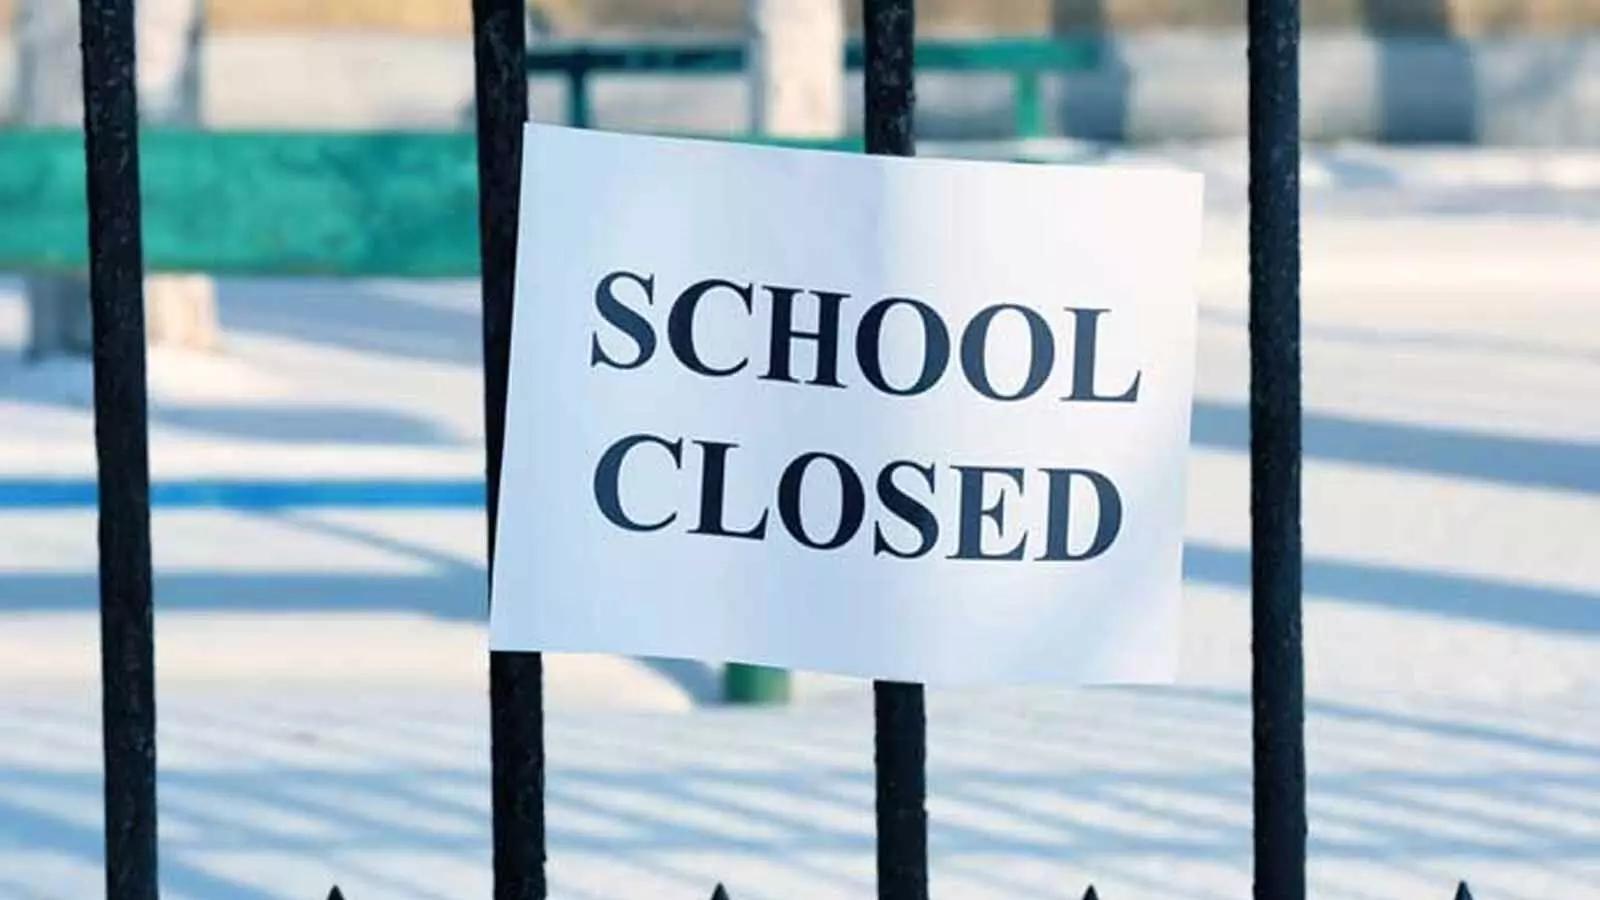 नहीं खुलेंगे स्कूल: Corona के चलते बड़ा फैसला, सरकार ने जारी किया आदेश